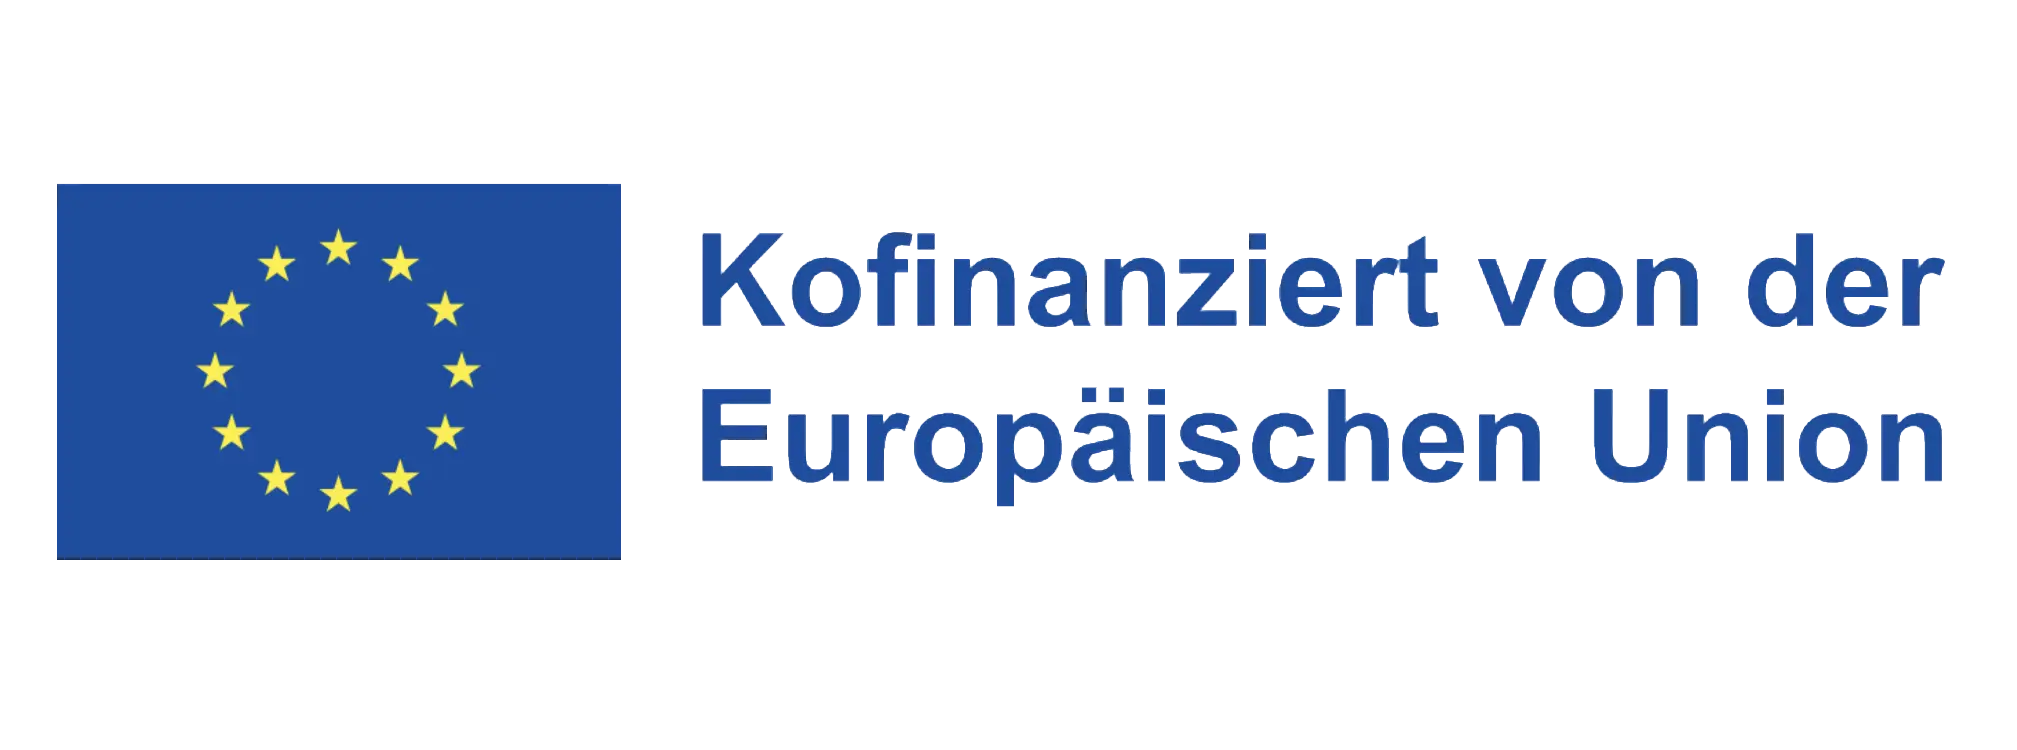 Logo "Kofinanziert von der Europäischen Union"